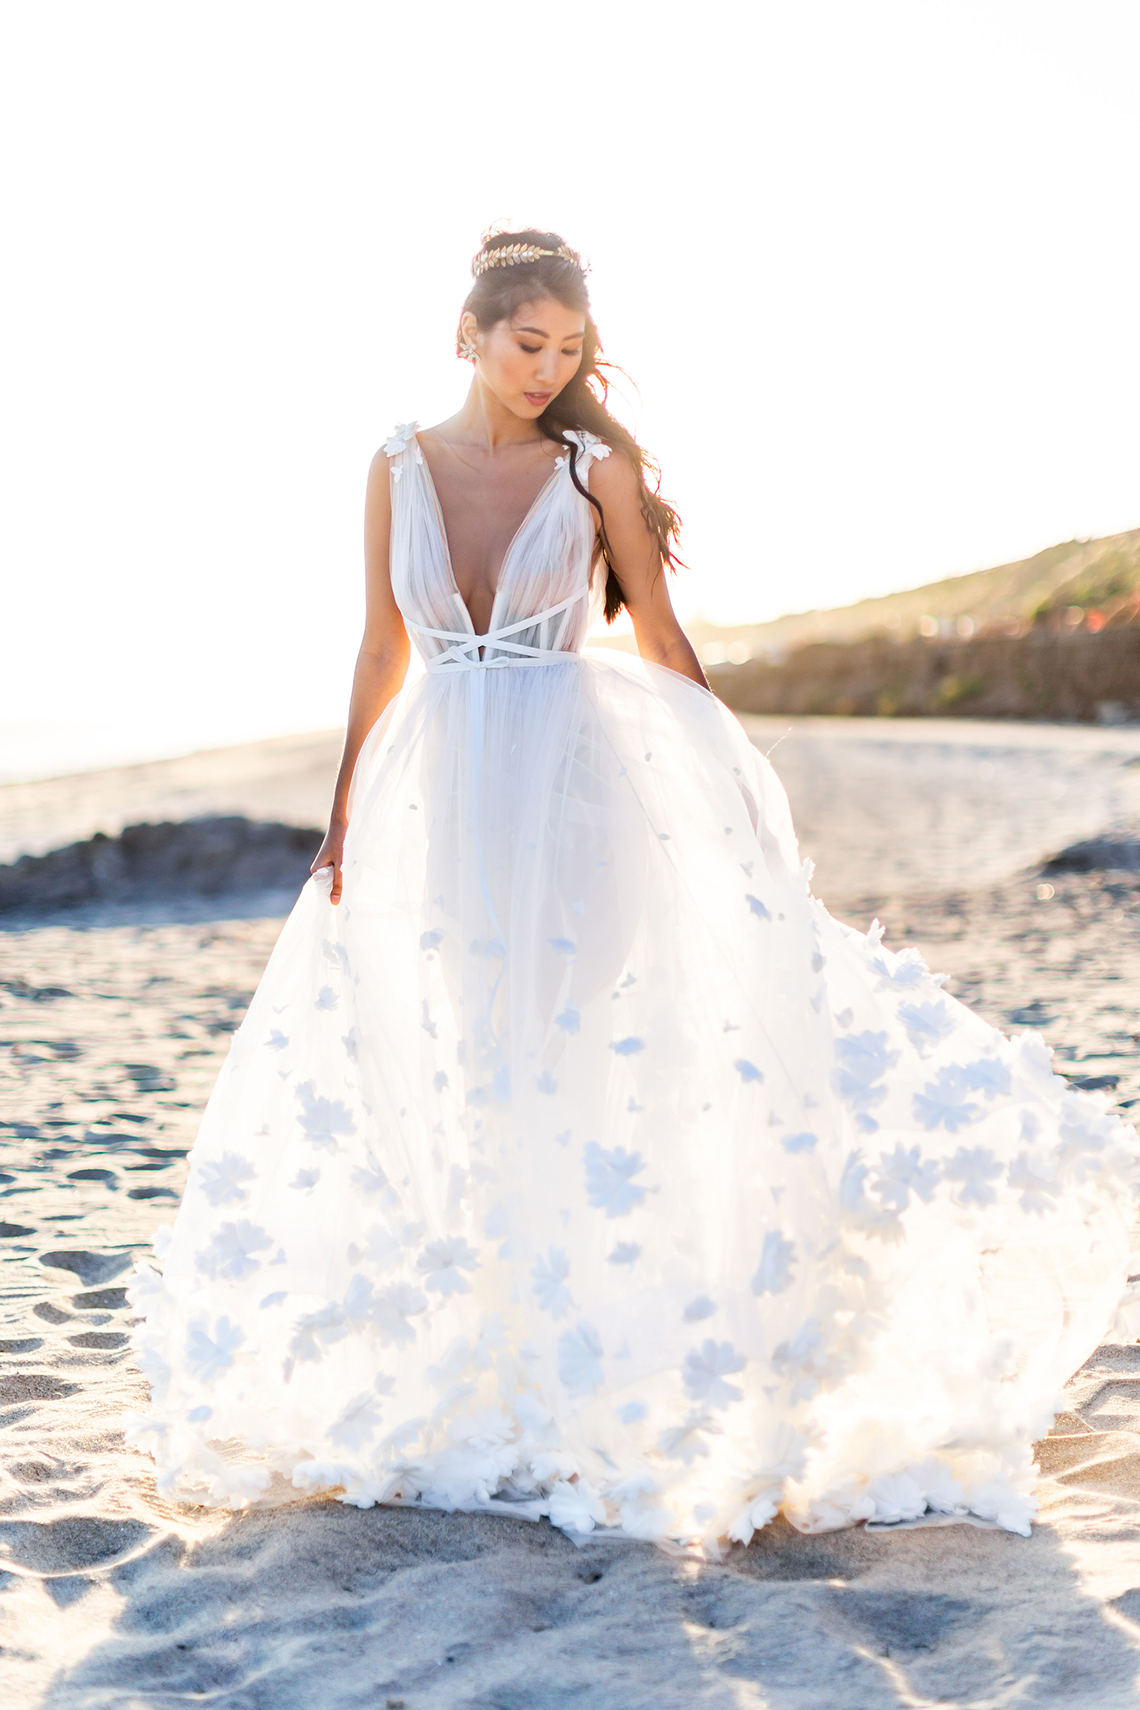 Ethereal Malibu Beach Wedding Inspiration Courage and Dash Photo 1 - Cách thực hiện và các nền tảng tốt nhất